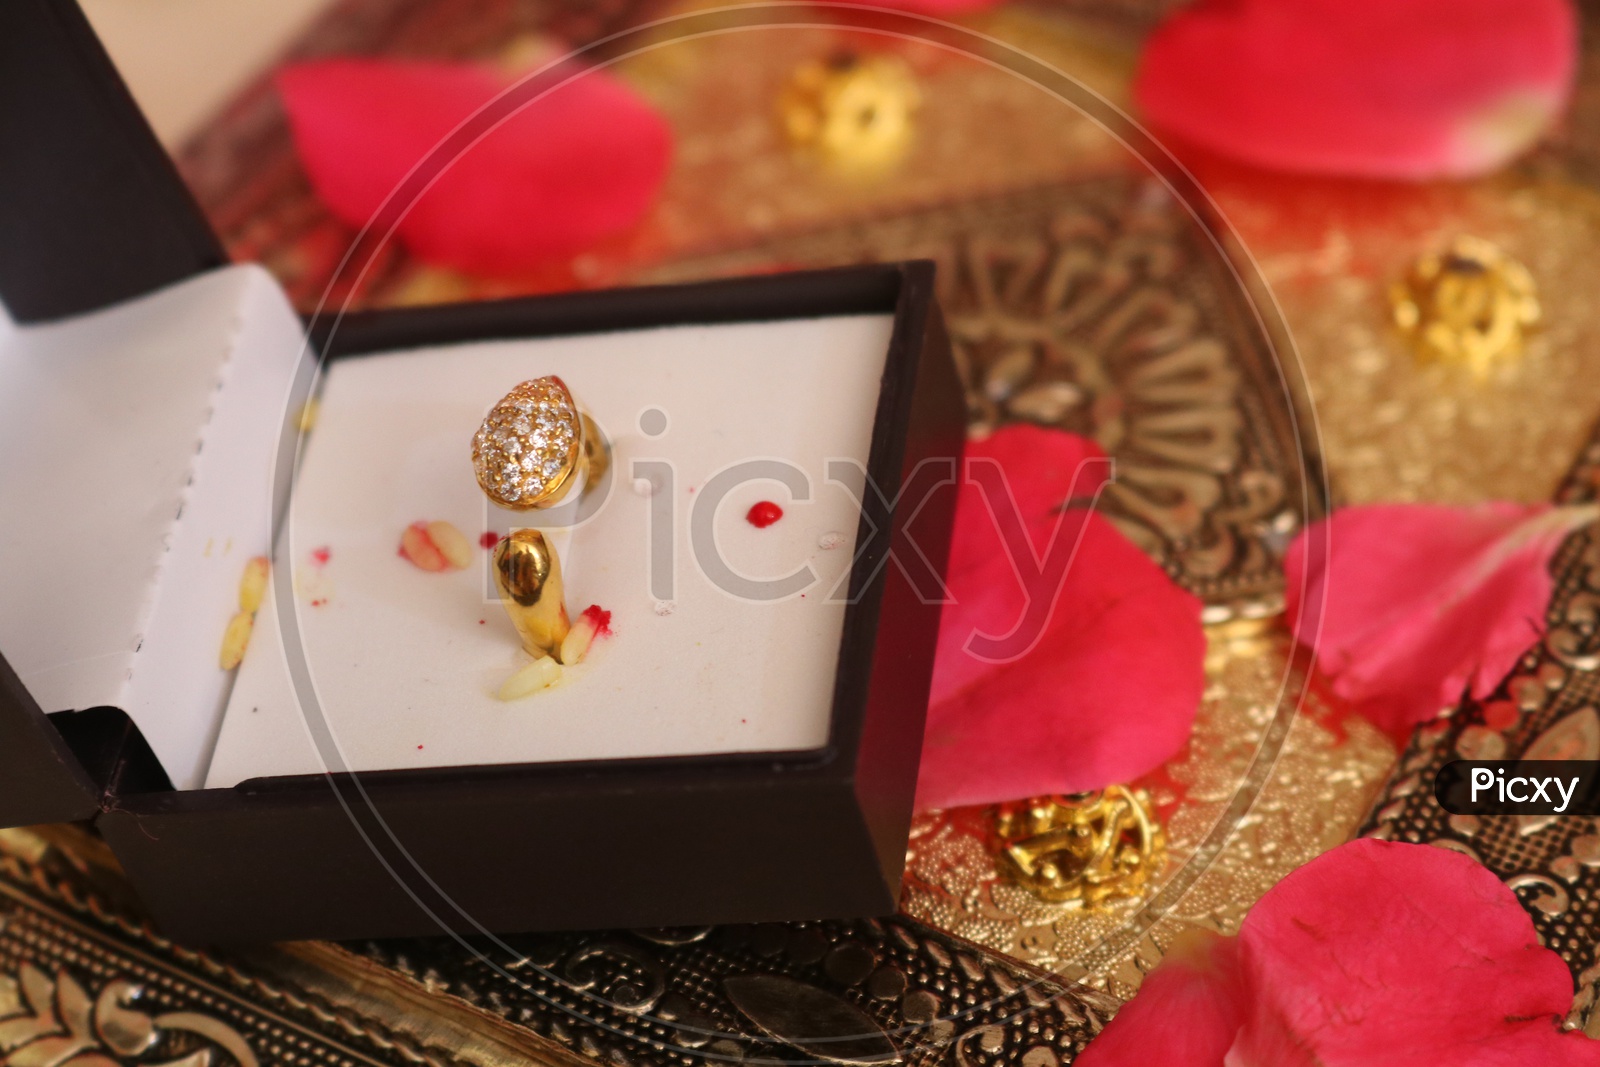 Gold Vanki Rings | Wedding rings engagement, Vanki ring, South indian  wedding